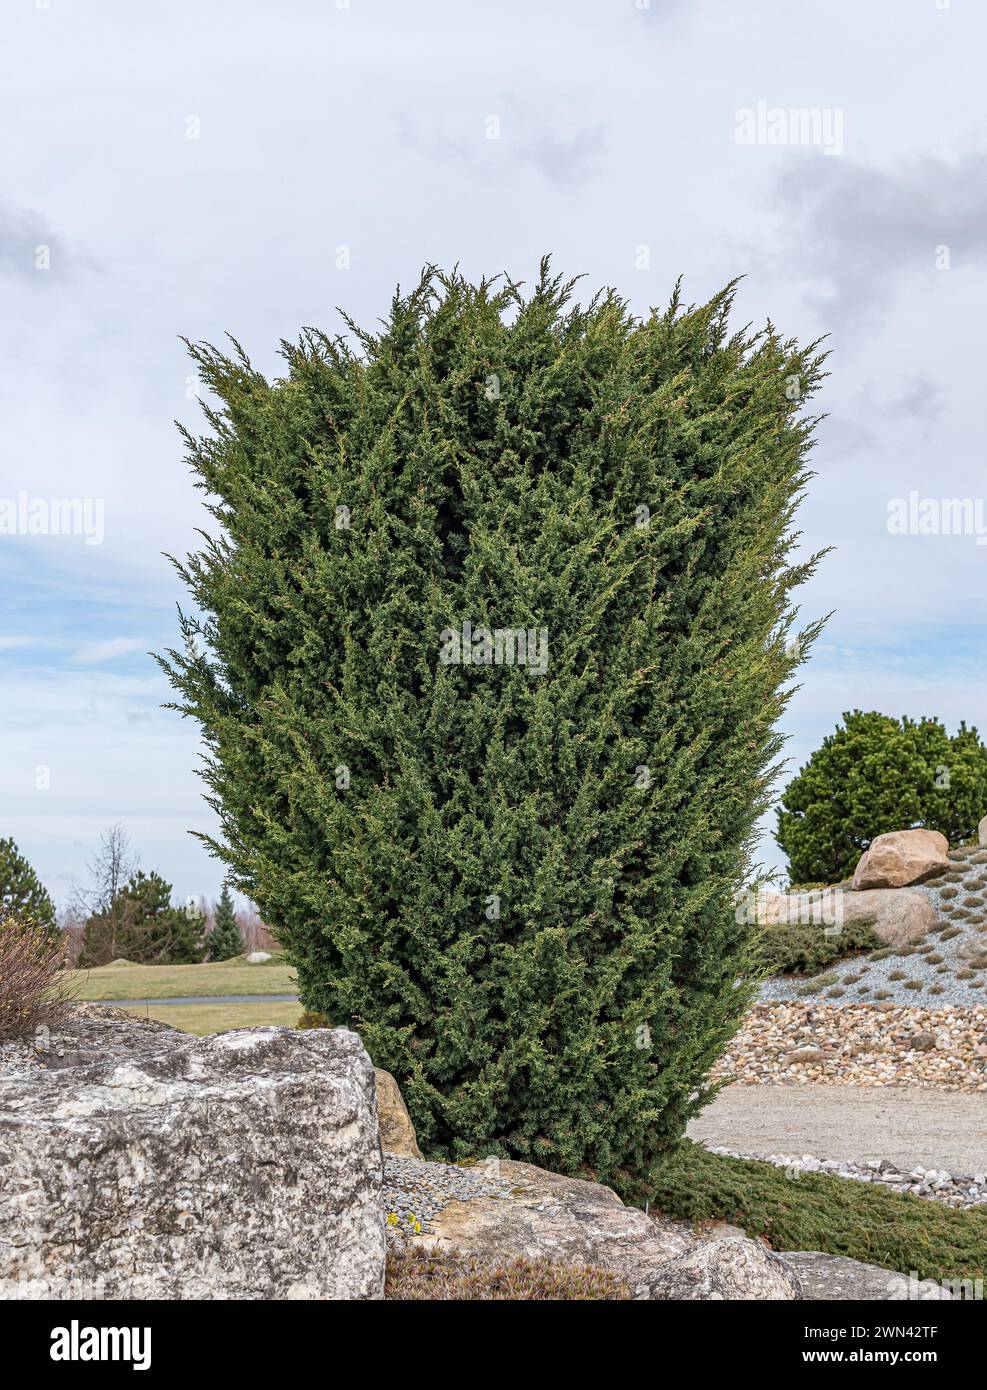 Chinesischer Wacholder (Juniperus chinensis 'Blaauw') Stock Photo